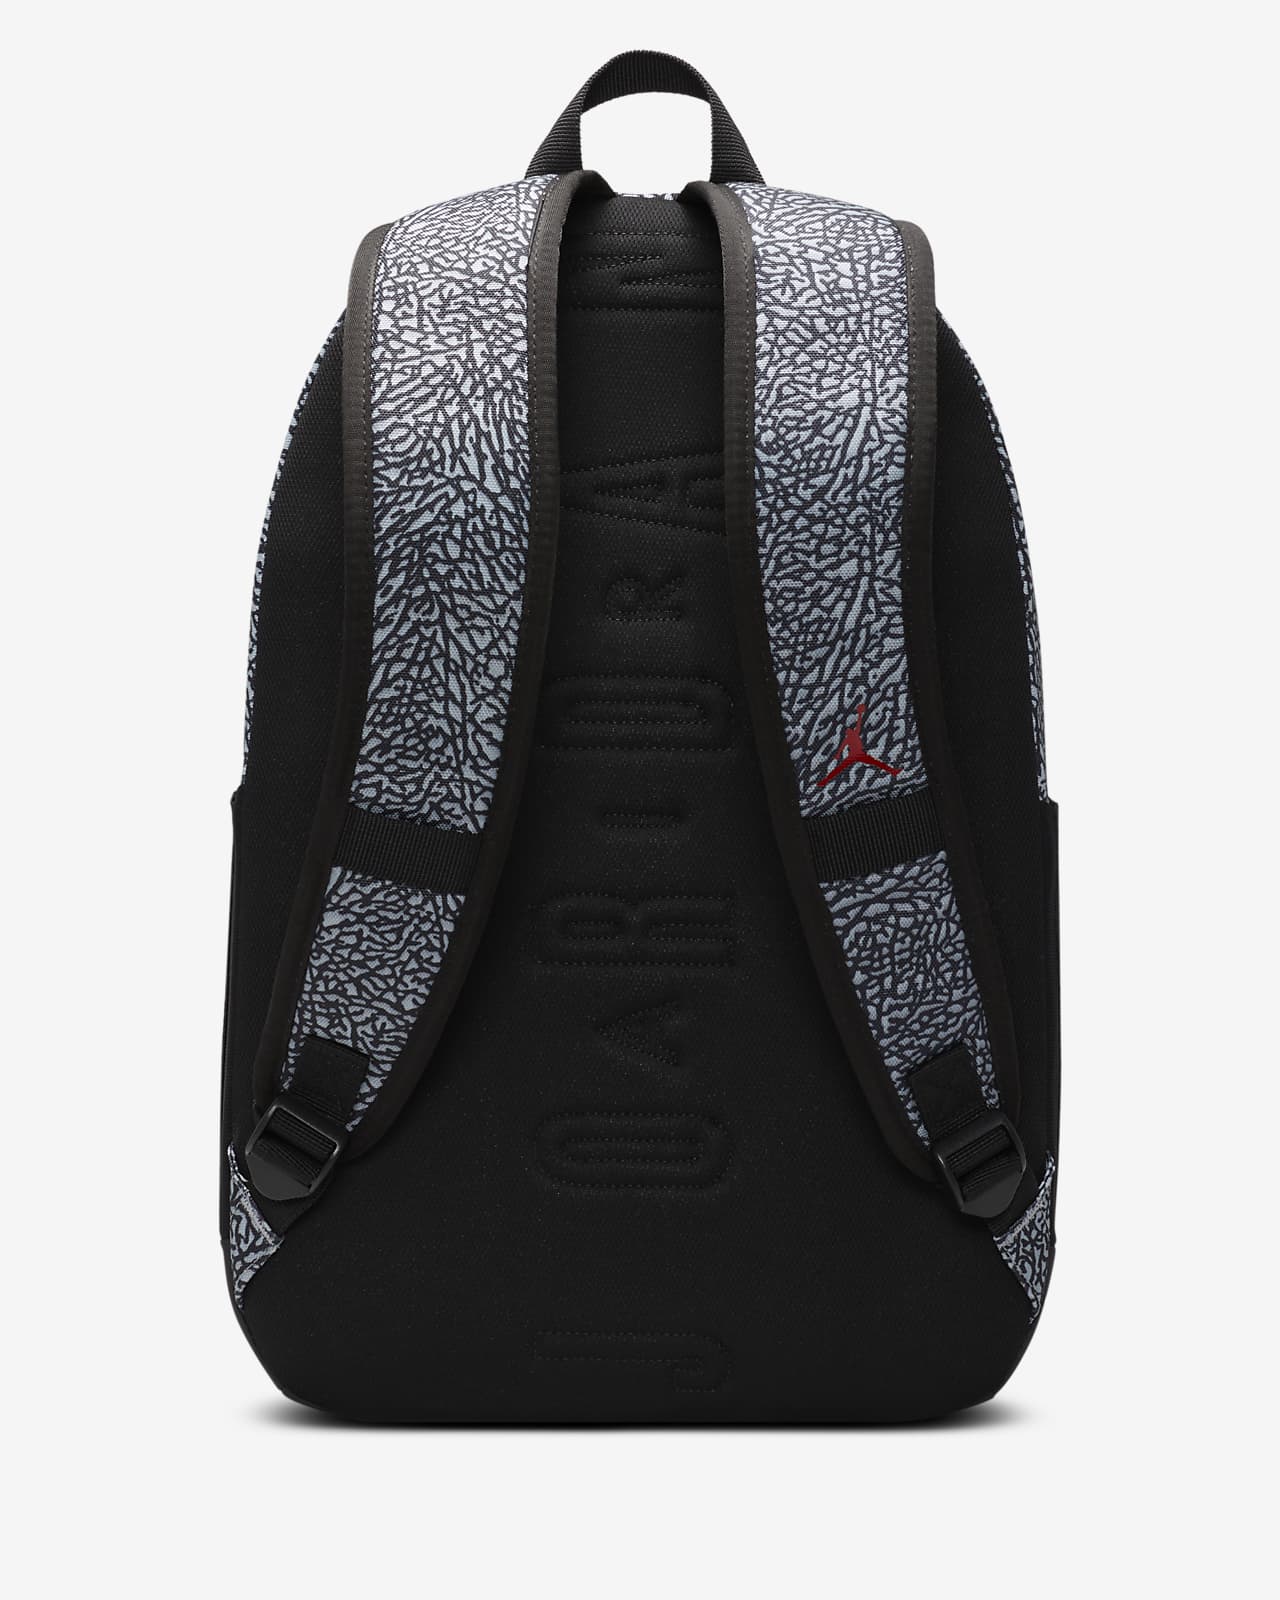 air jordan backpack original